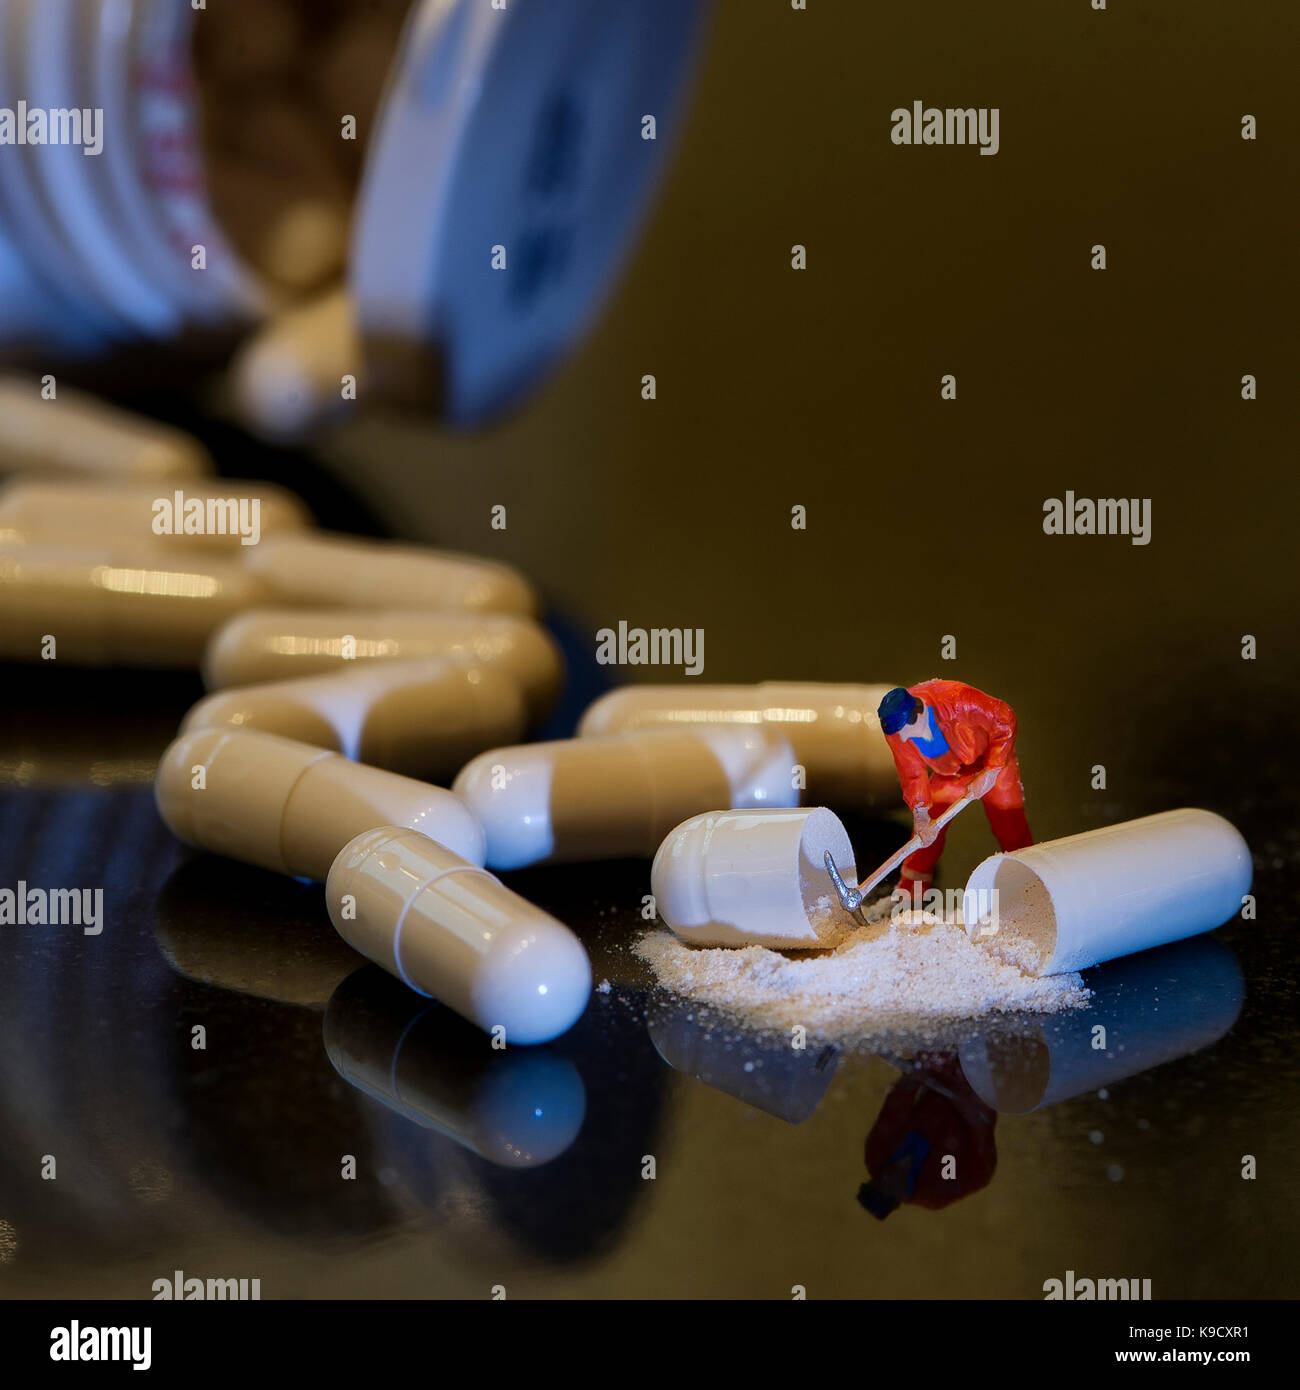 "Ein harter Tag an der Pille Factory"-Mann mit Pick-axe und weißes Pulver verschüttet heraus - Flasche und andere Pillen unscharf im Hintergrund Stockfoto